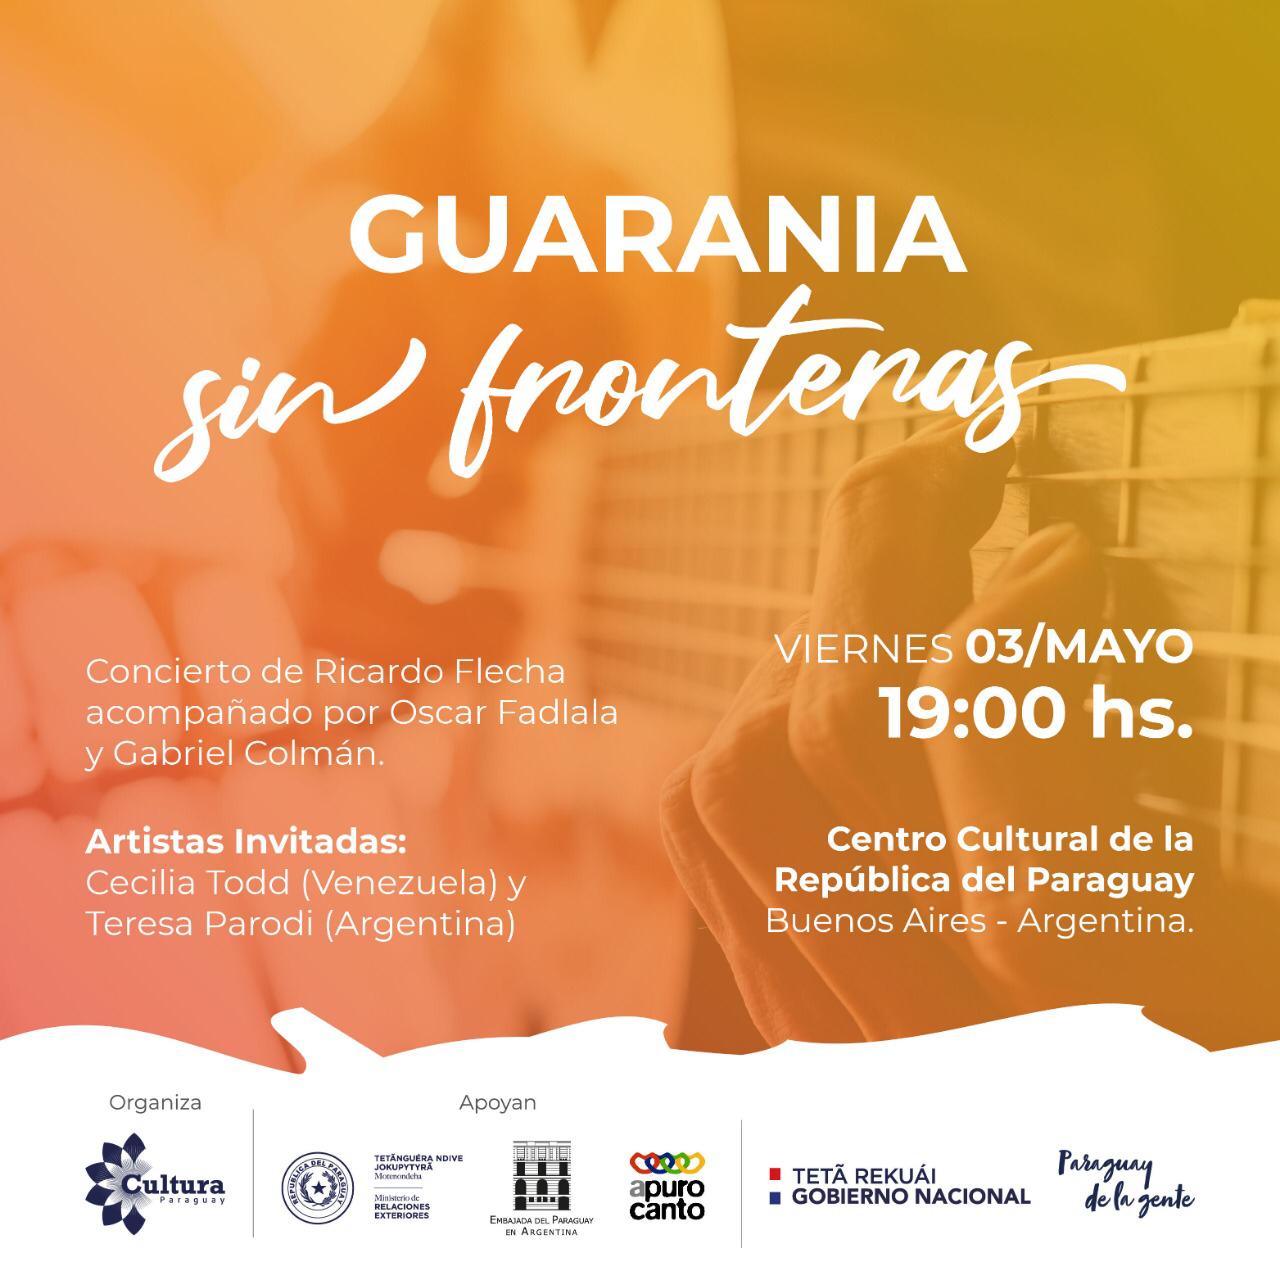 “La Guarania sin Fronteras”, concierto que busca cautivar a la capital argentina imagen